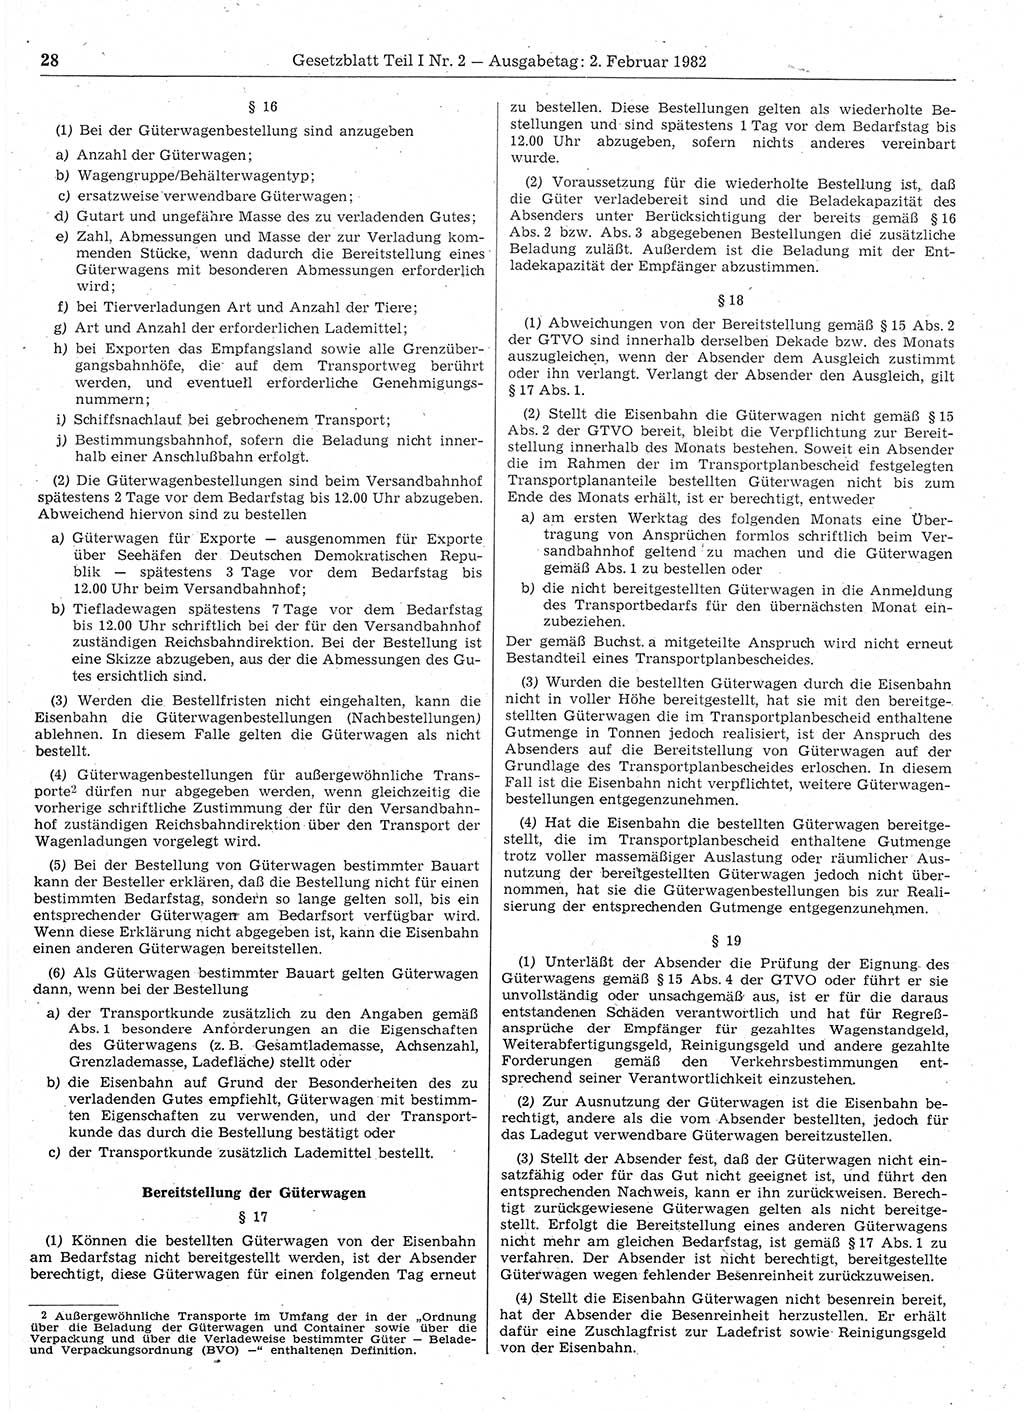 Gesetzblatt (GBl.) der Deutschen Demokratischen Republik (DDR) Teil Ⅰ 1982, Seite 28 (GBl. DDR Ⅰ 1982, S. 28)